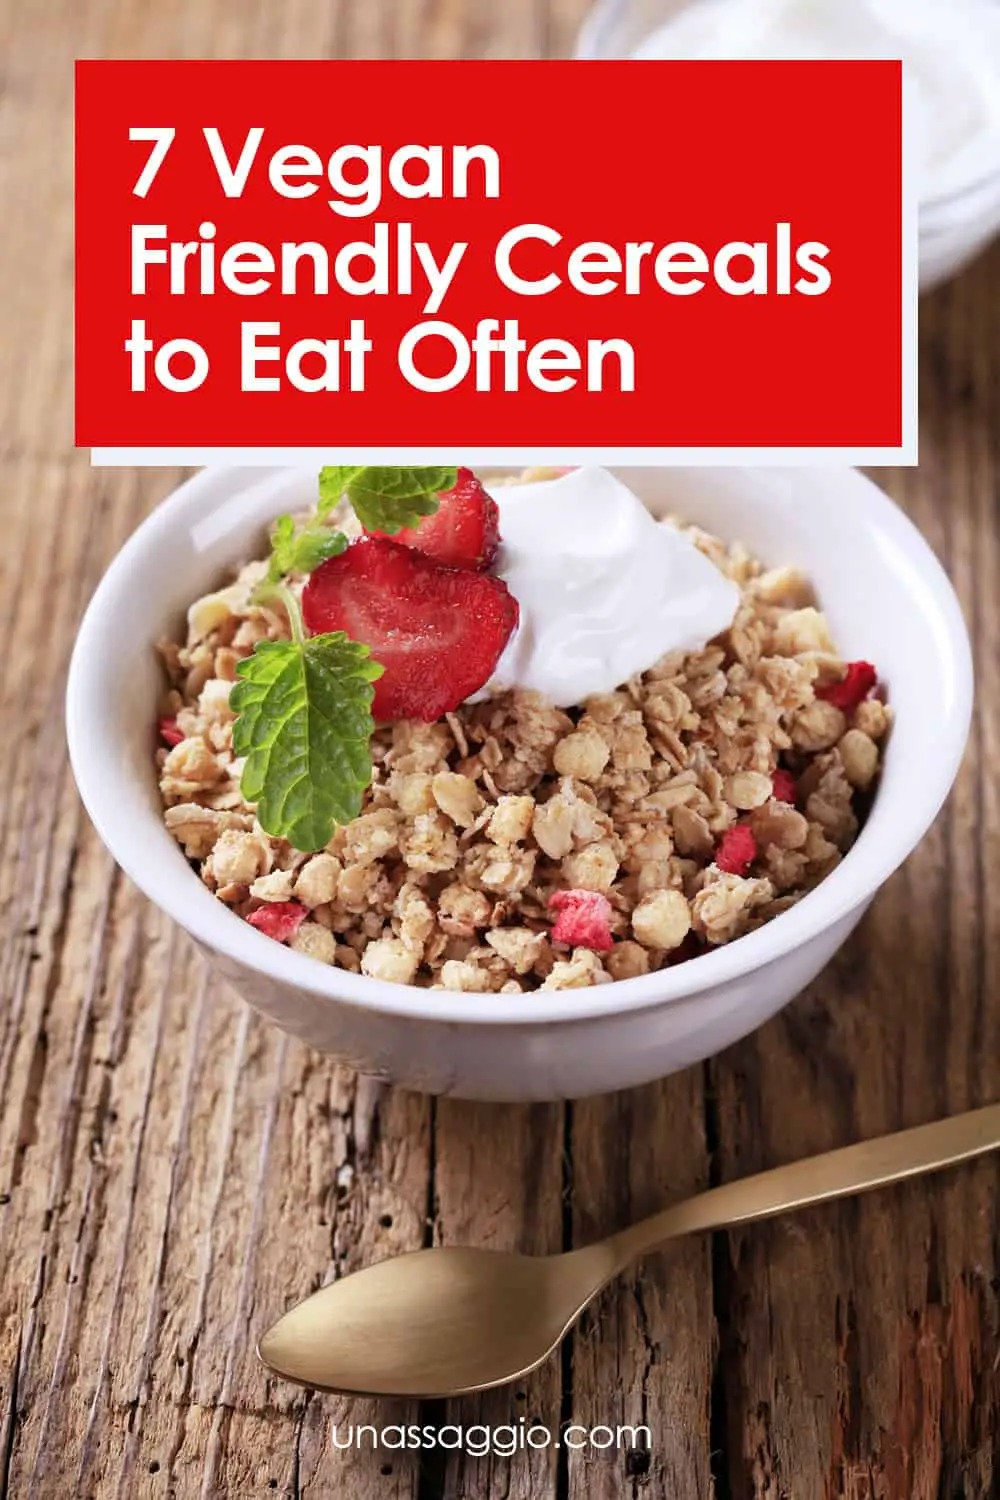  7 Vegan Friendly Cereals to Eat Often